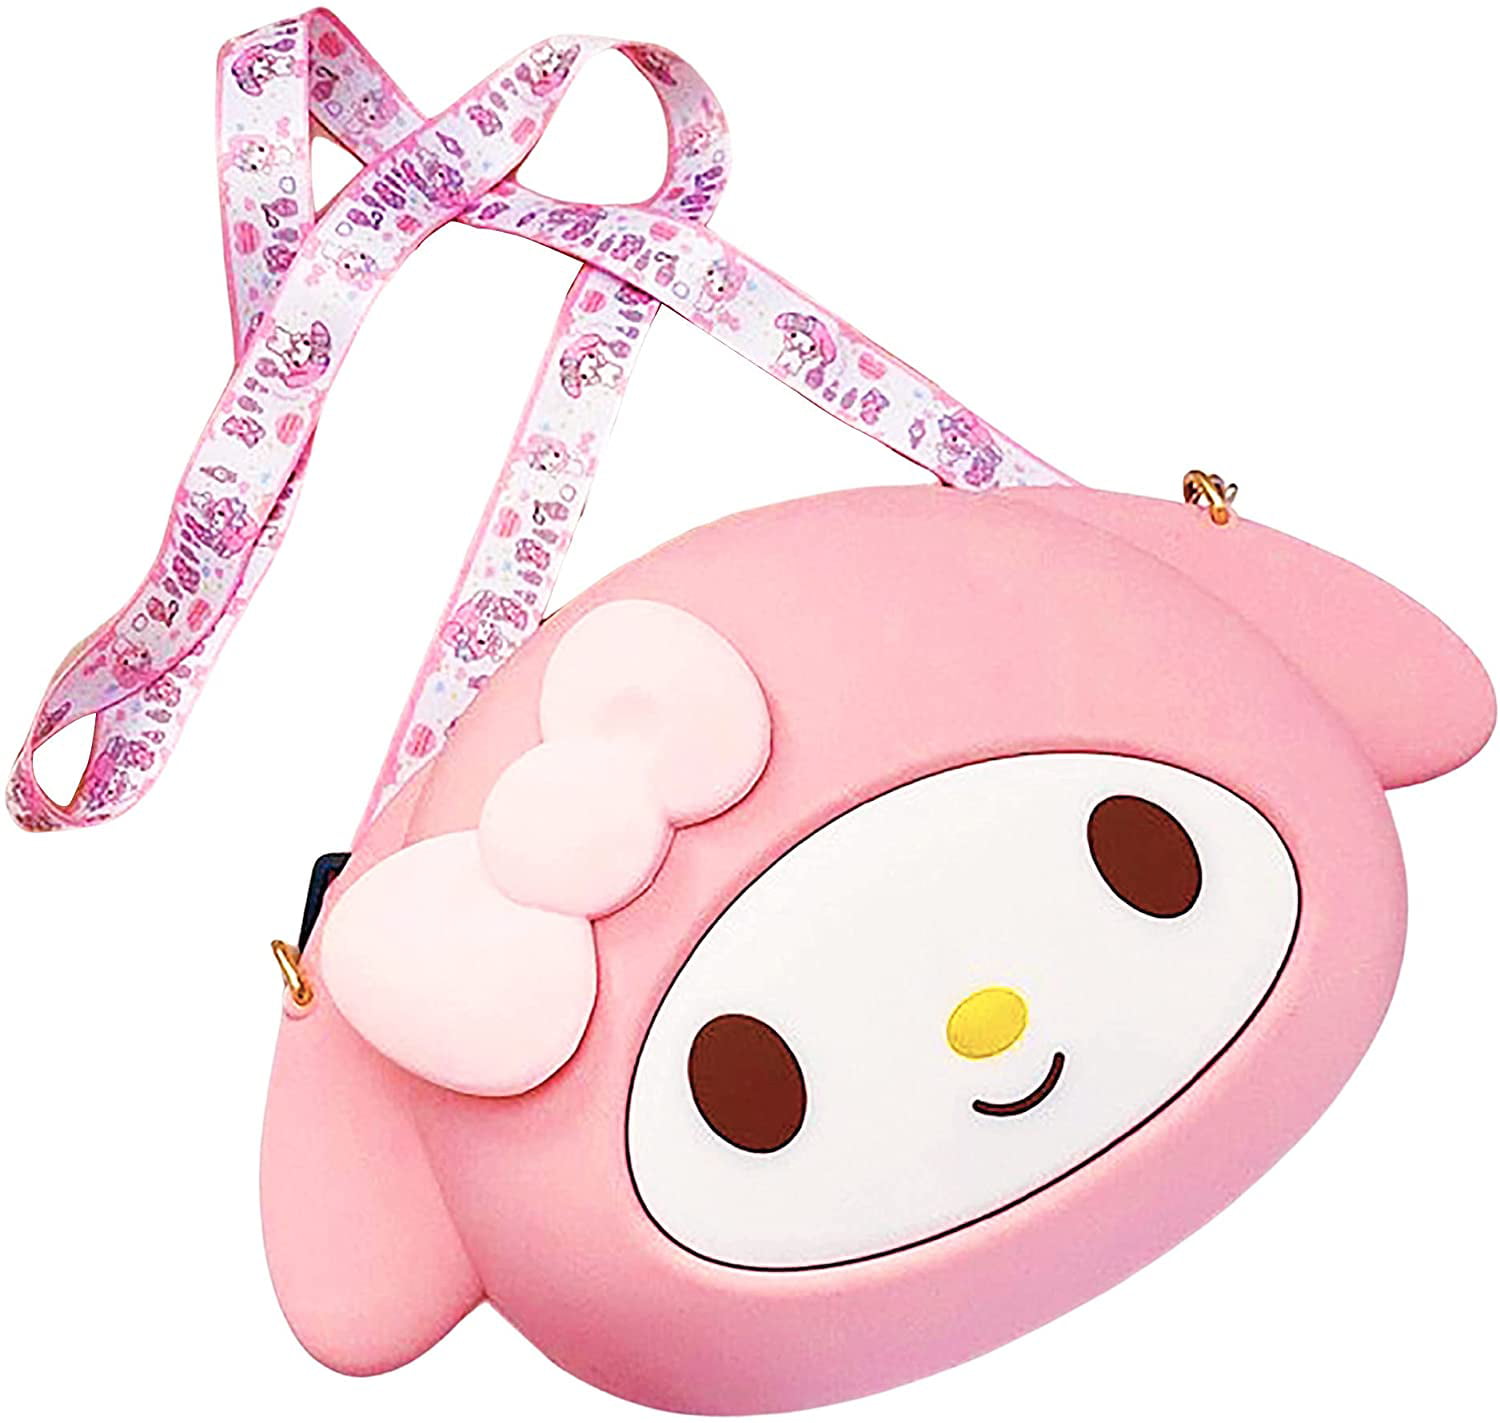 Japan Sanrio My Melody Pink Waterproof PU Backpack Bookbags Girl Shoulder Bags 